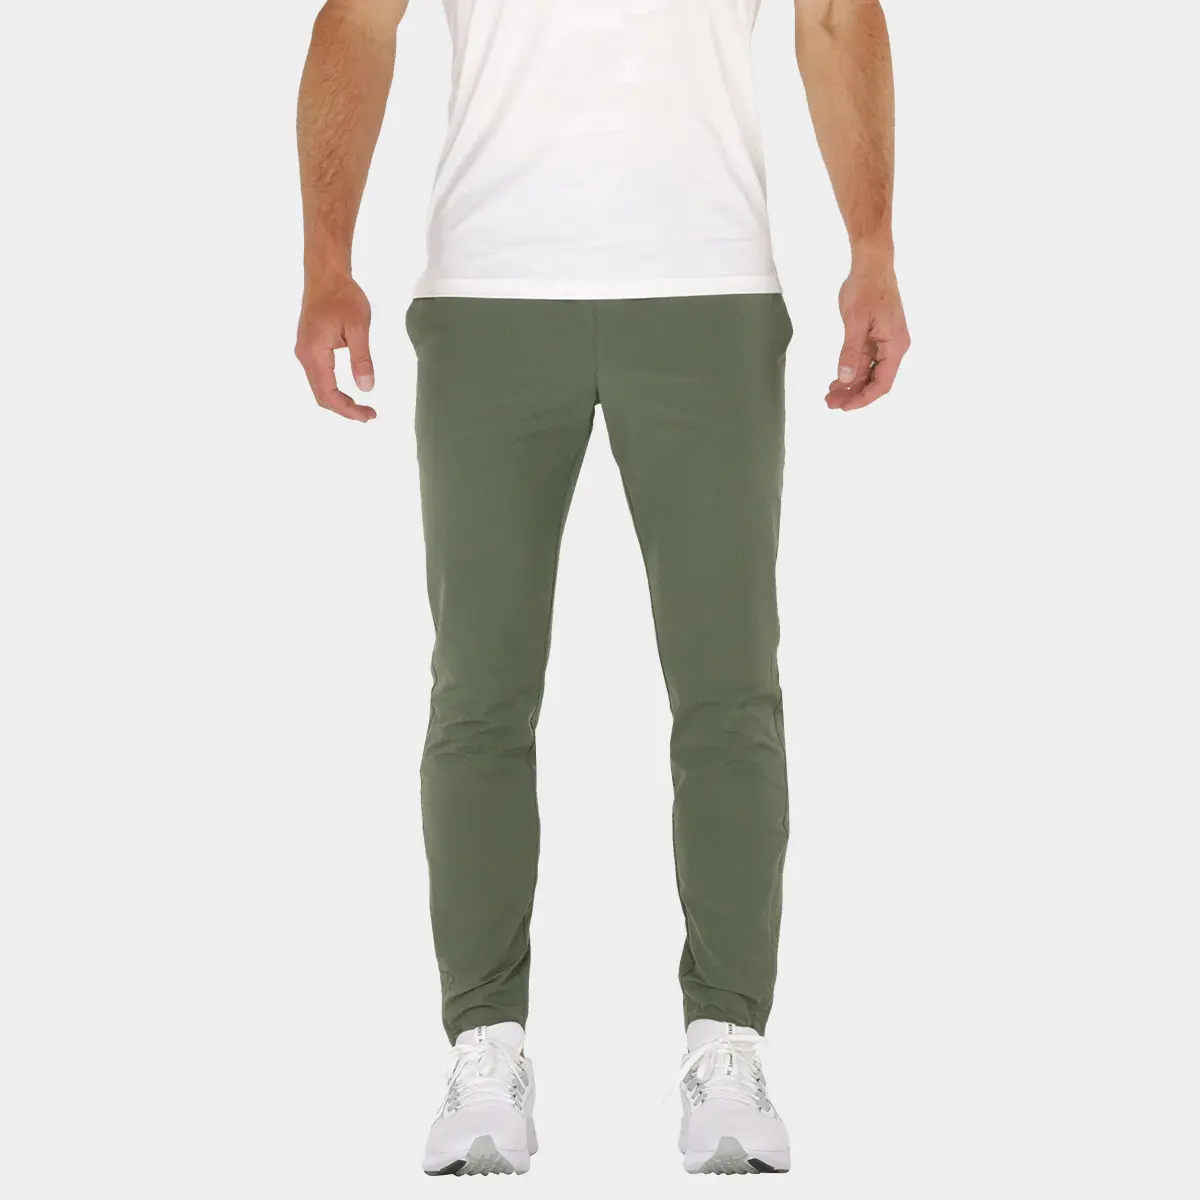 Buy Men Green Solid Casual Jogger Pants Online - 749629 | Van Heusen